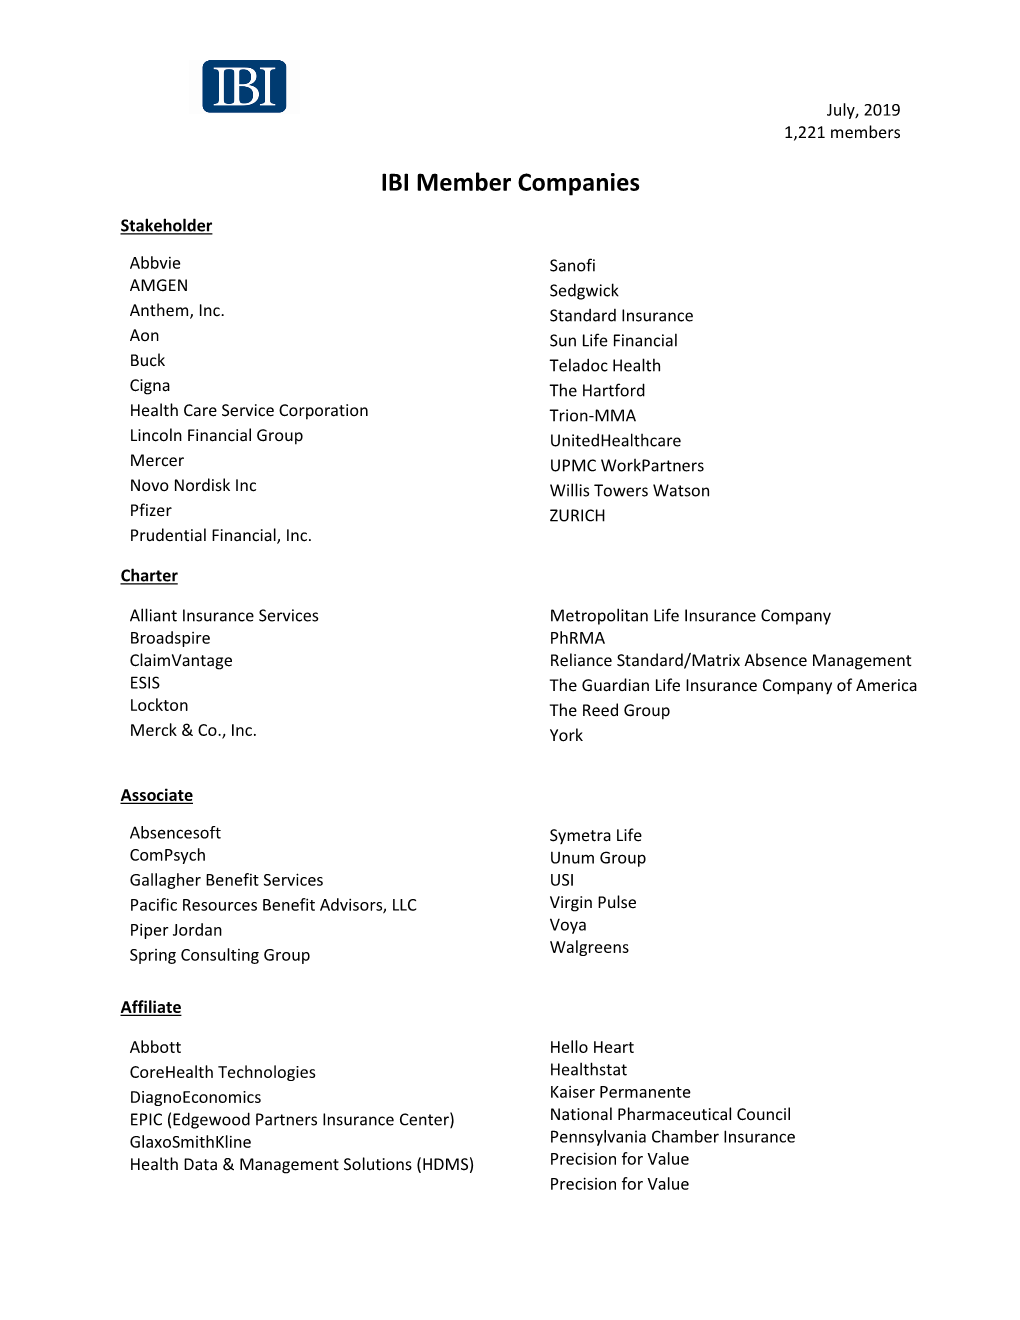 IBI Member Companies